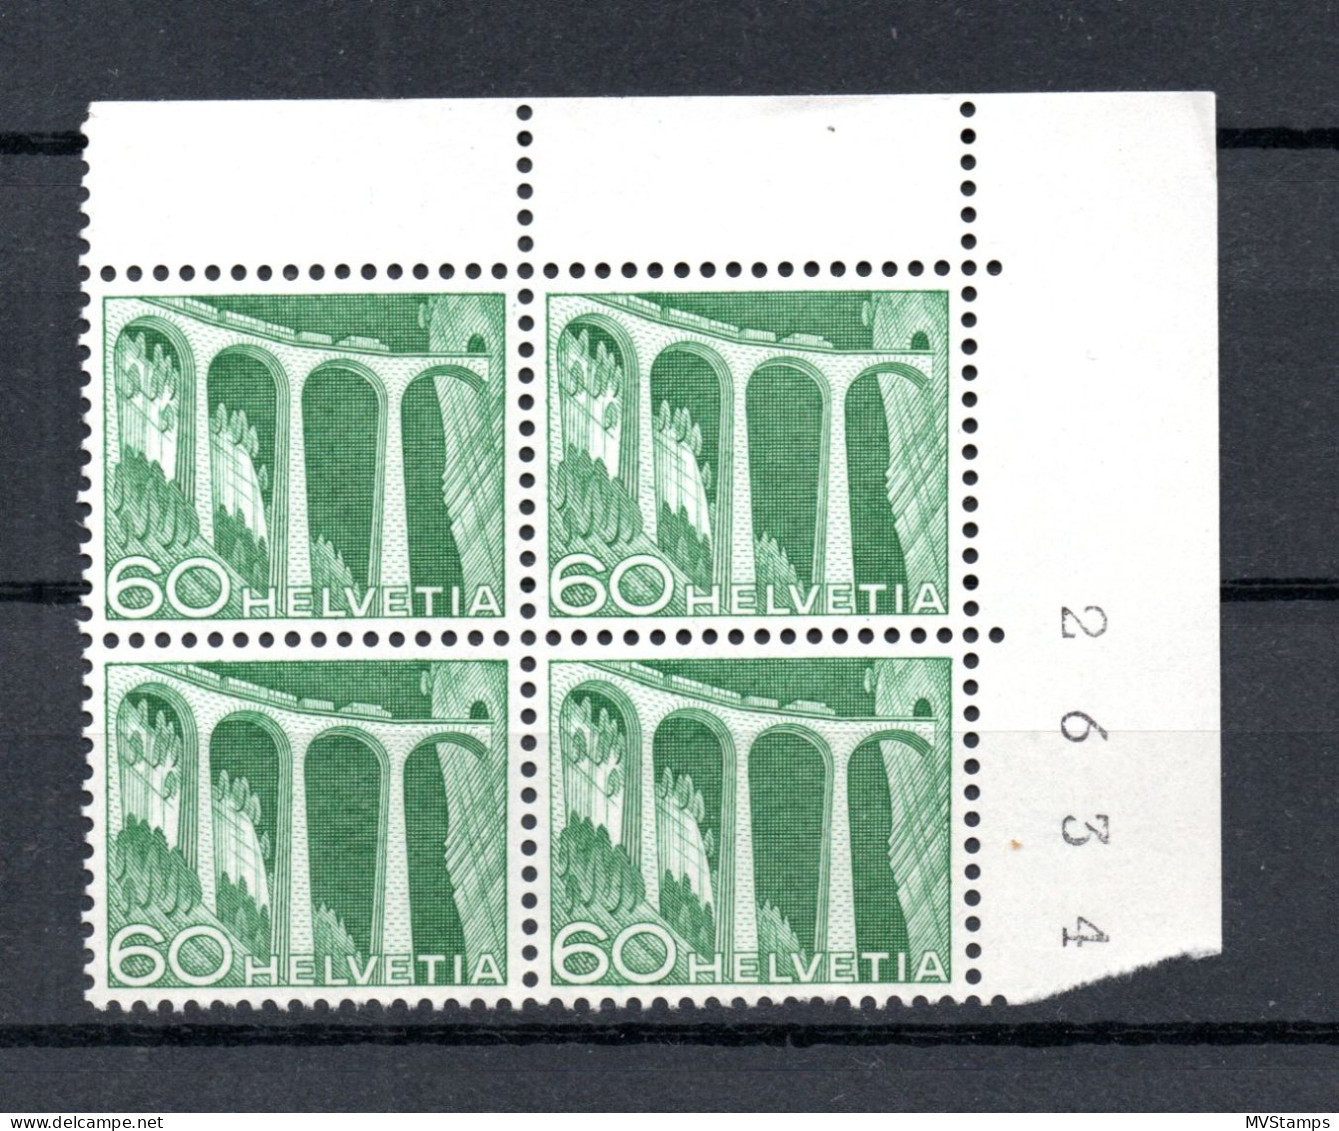 Schweiz 1949 Freimarke 539 In UER Viererblocke Postfrisch - Unused Stamps